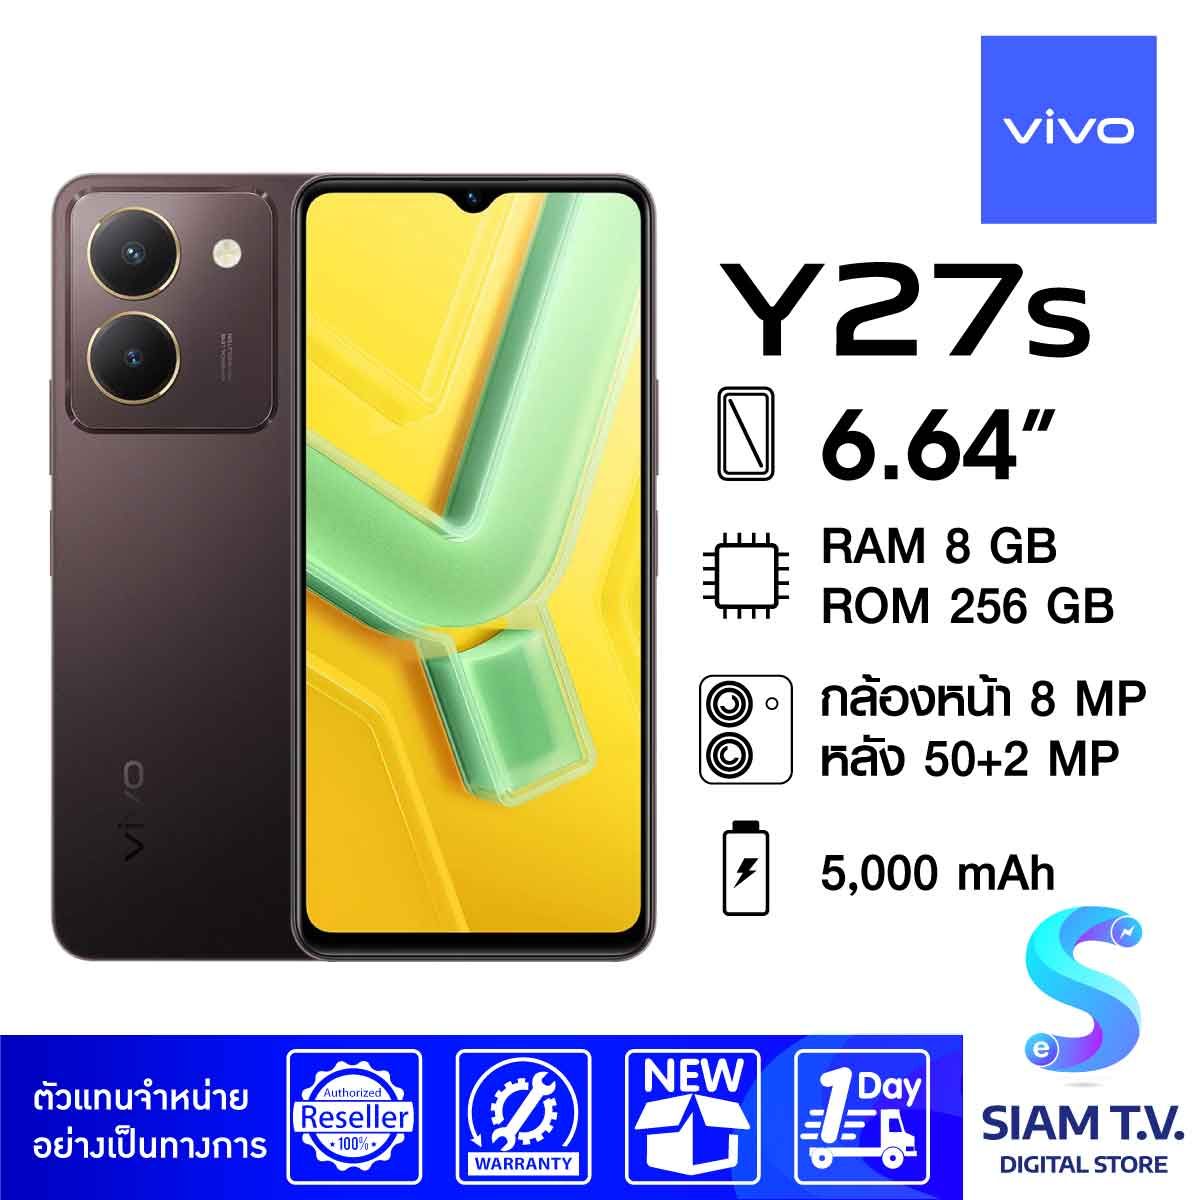 VIVO Y27S ( RAM 8 GB / ROM 256 GB )